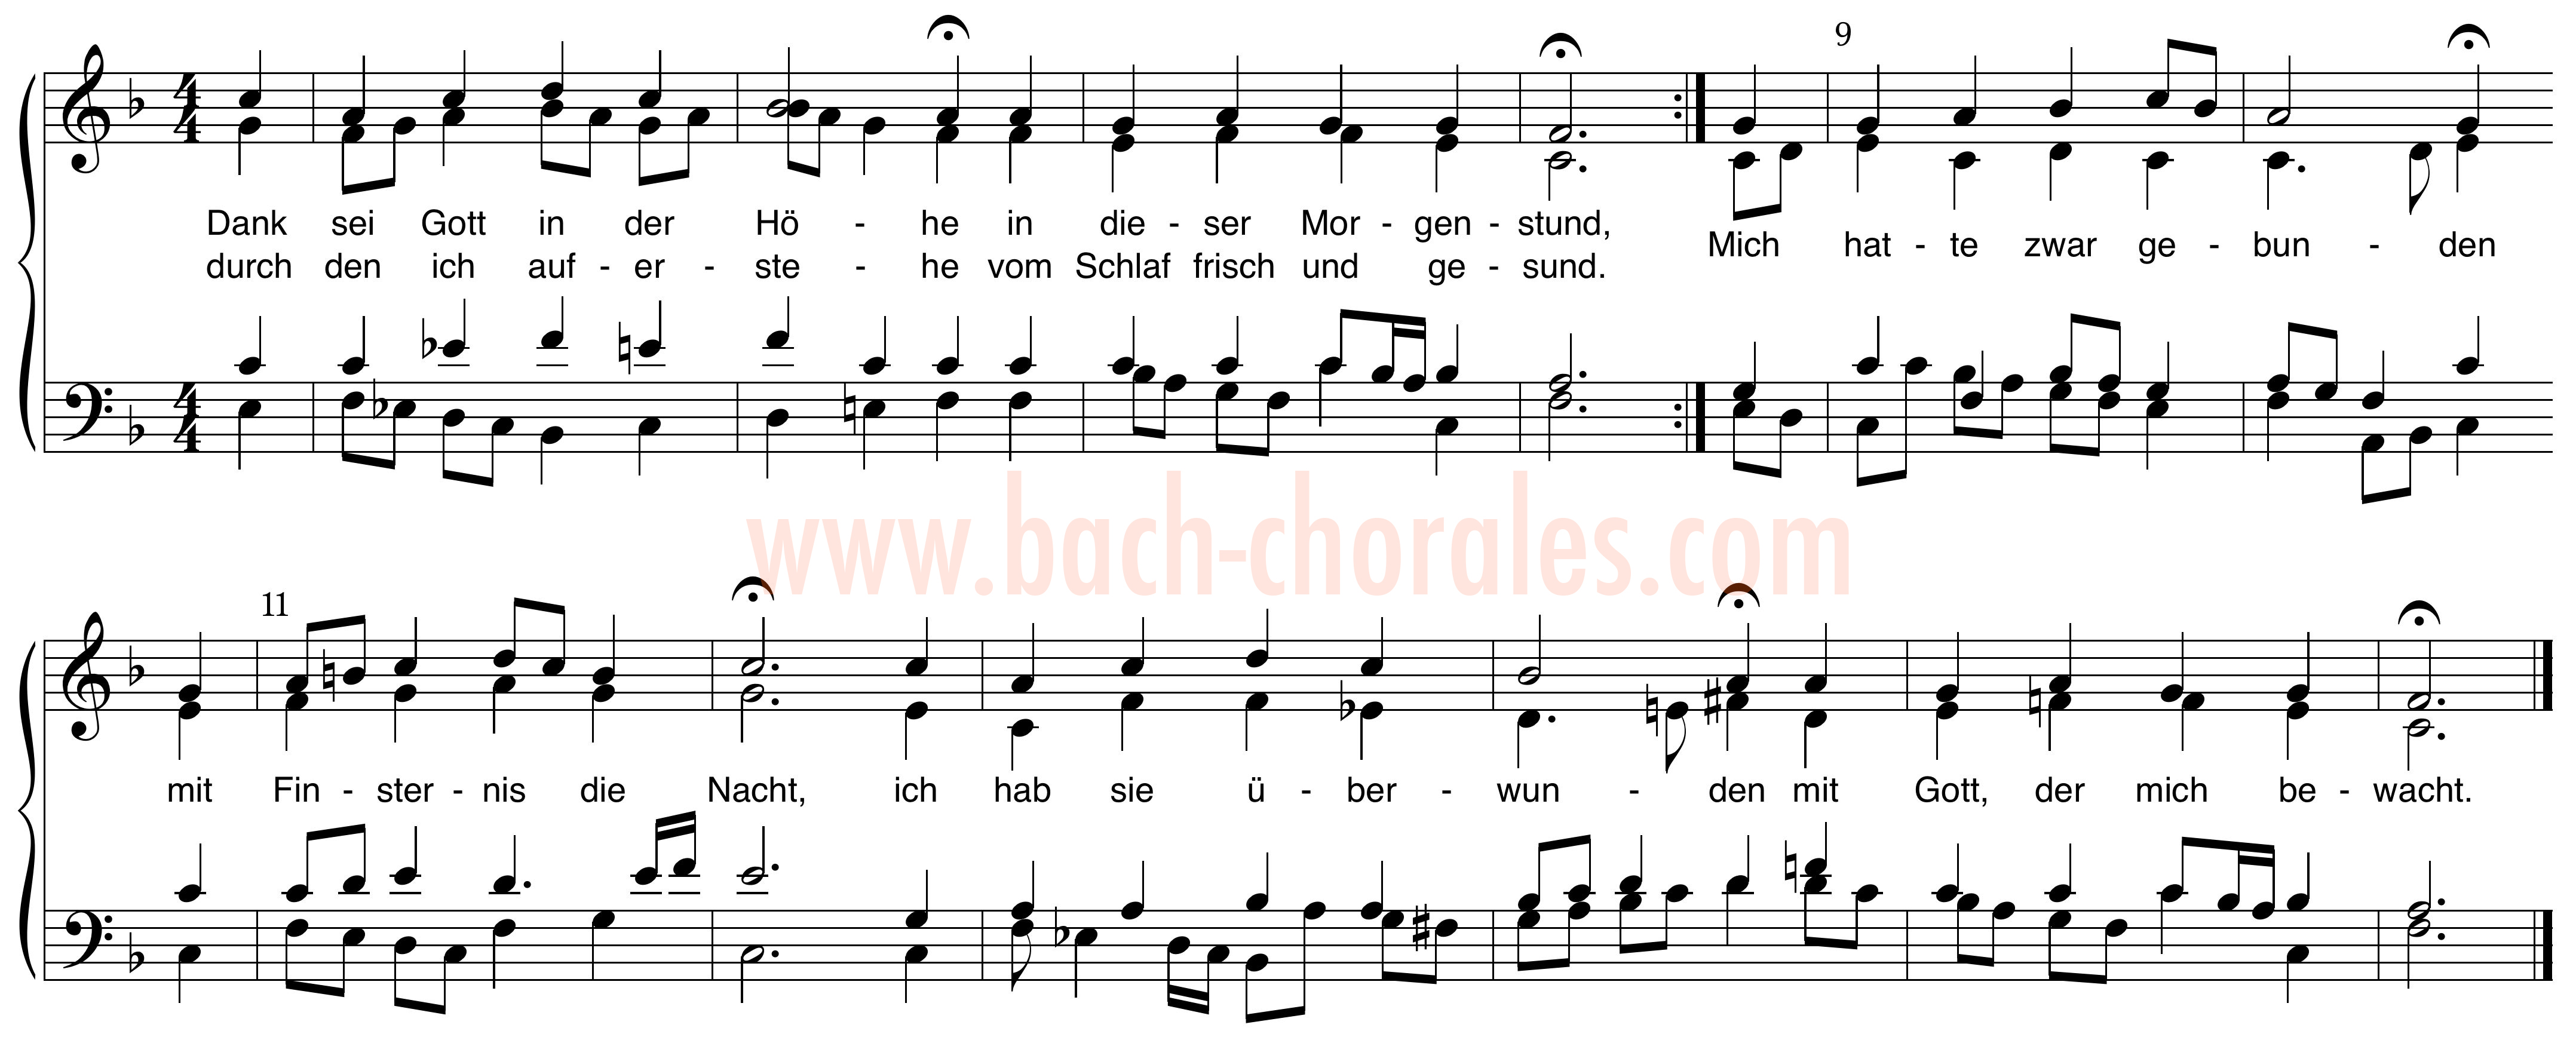 notenbeeld BWV 287 op https://www.bach-chorales.com/